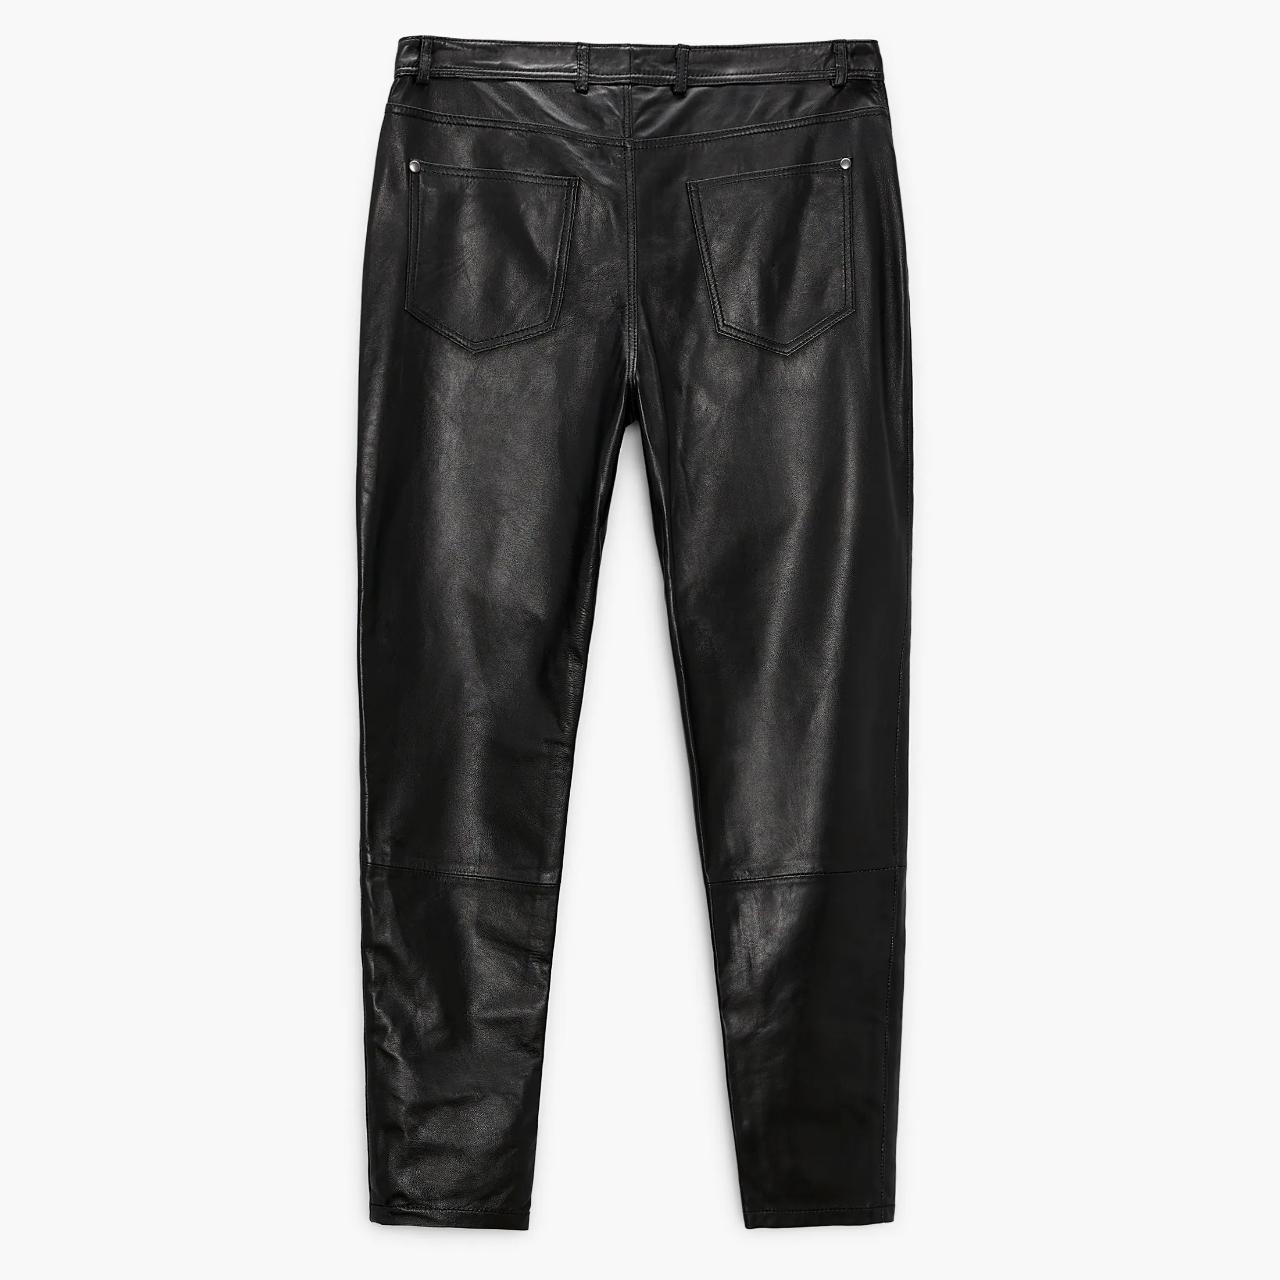 Men's ZARA 100% Genuine Leather Black Skinny Fit... - Depop